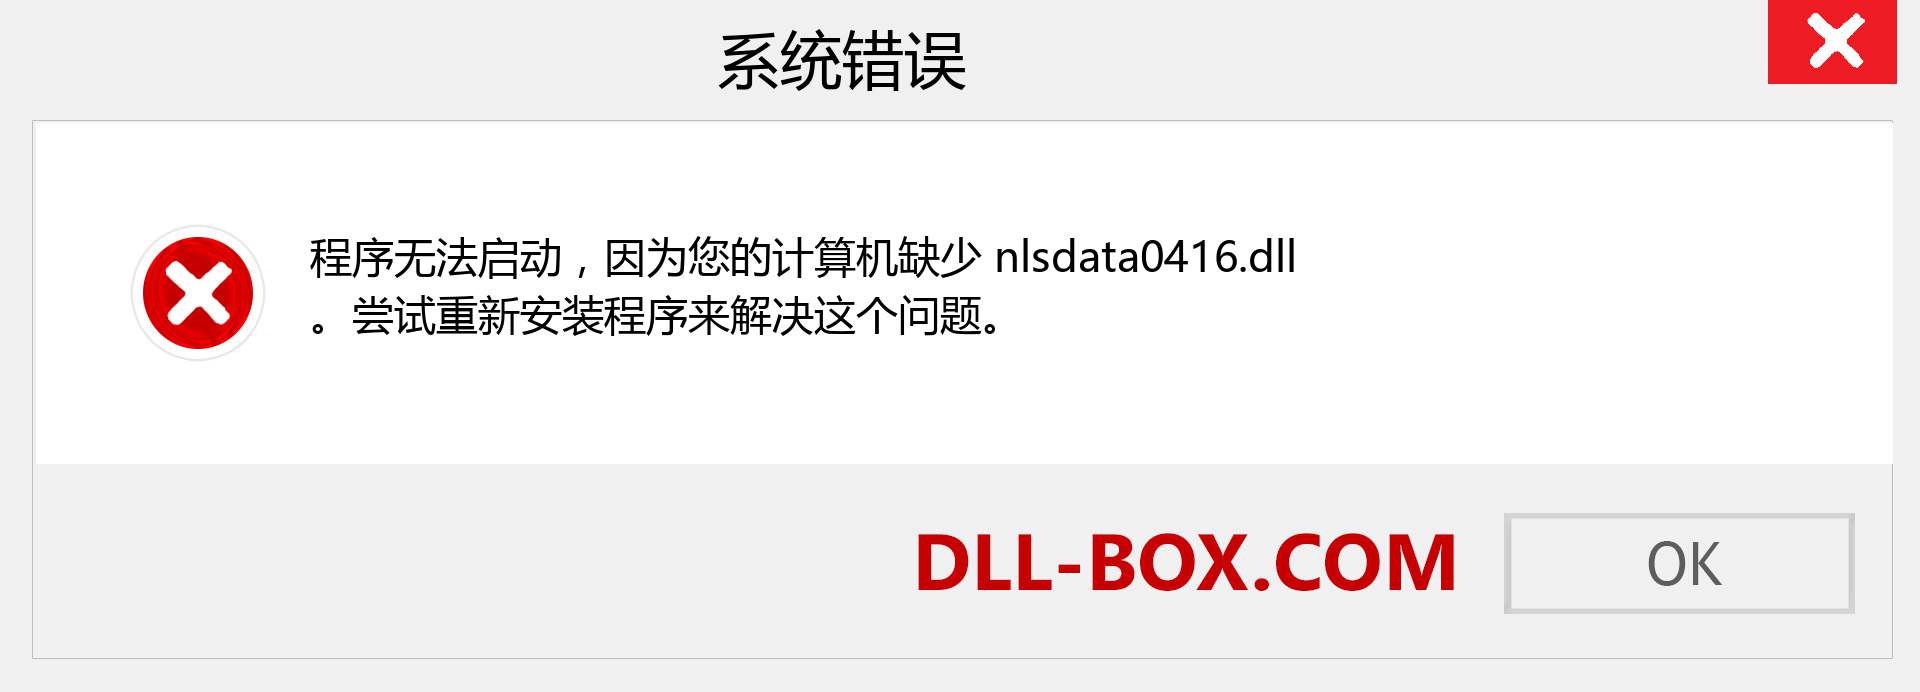 nlsdata0416.dll 文件丢失？。 适用于 Windows 7、8、10 的下载 - 修复 Windows、照片、图像上的 nlsdata0416 dll 丢失错误